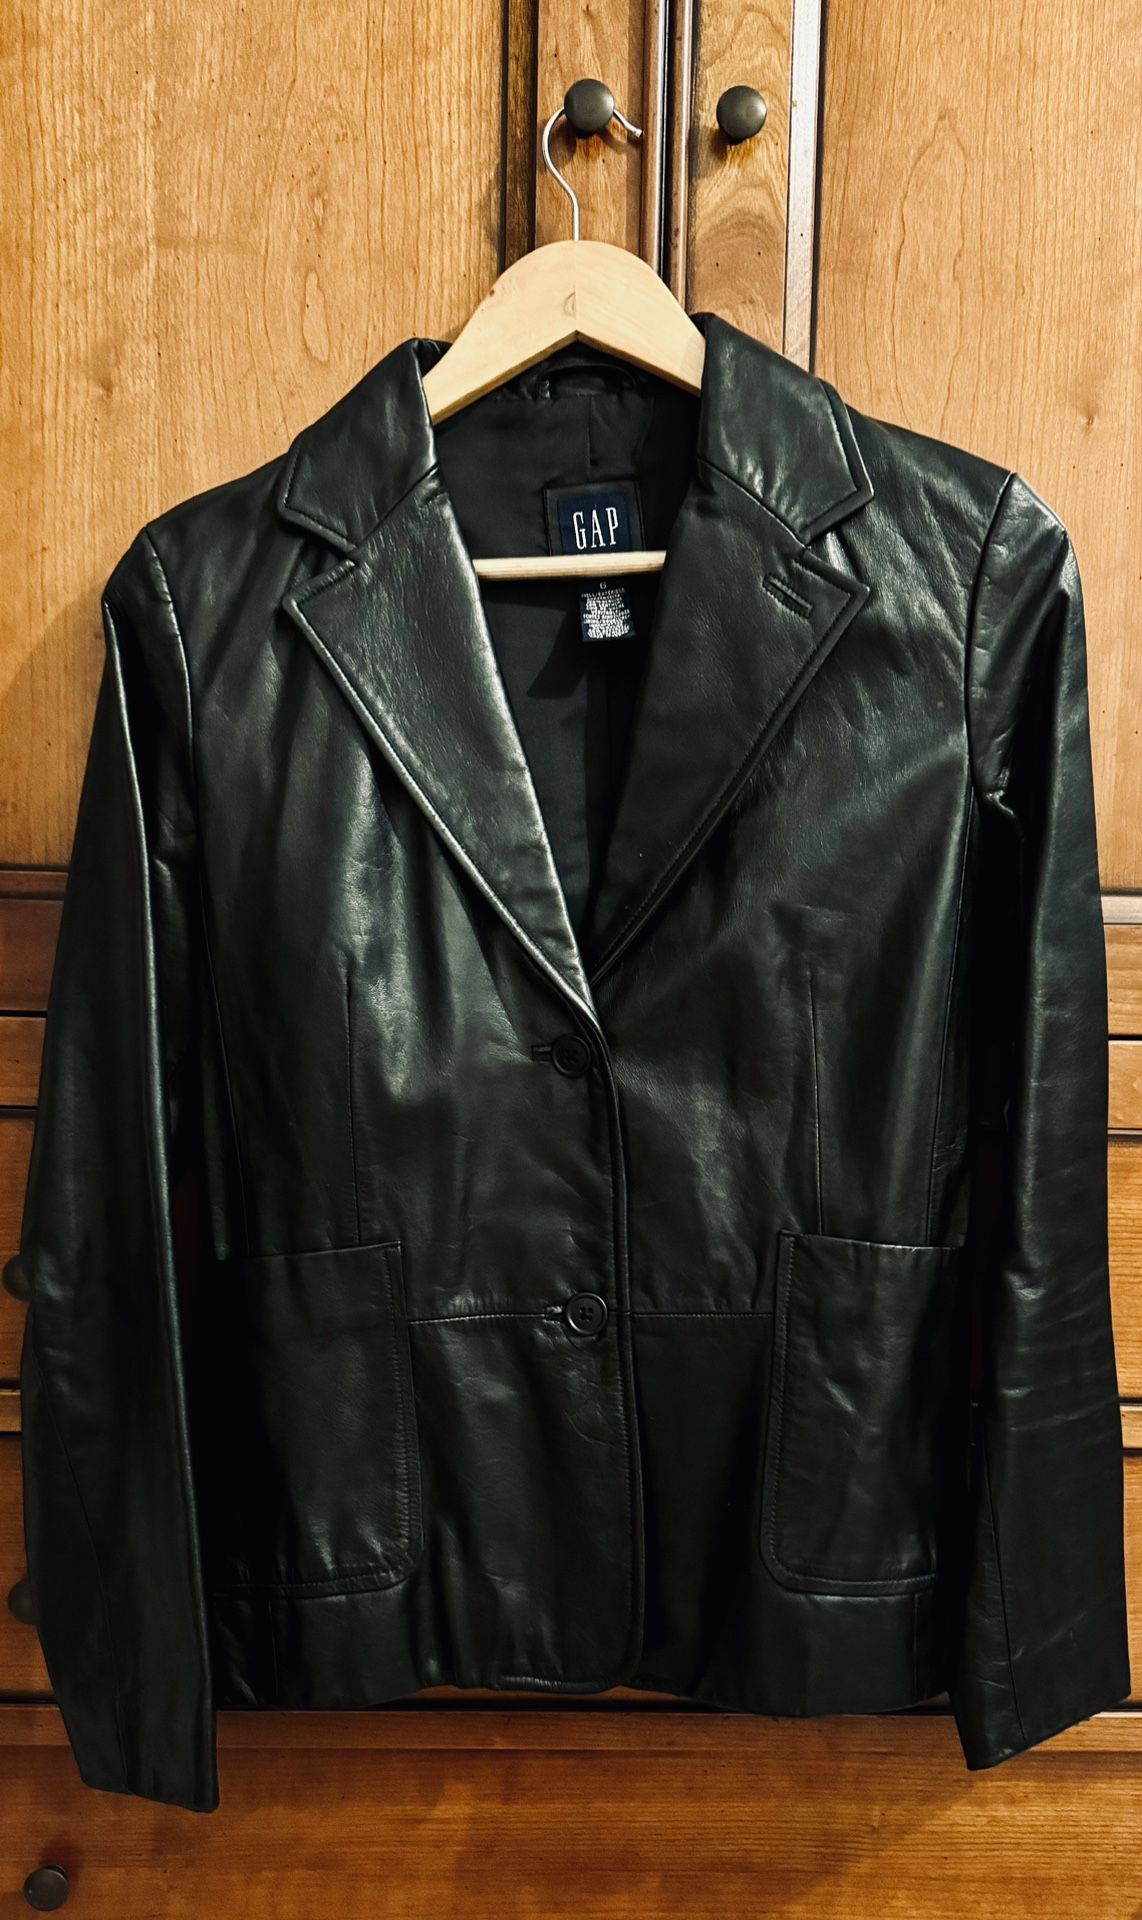 Genuine Leather Jacket Black Color, GAP Brand 